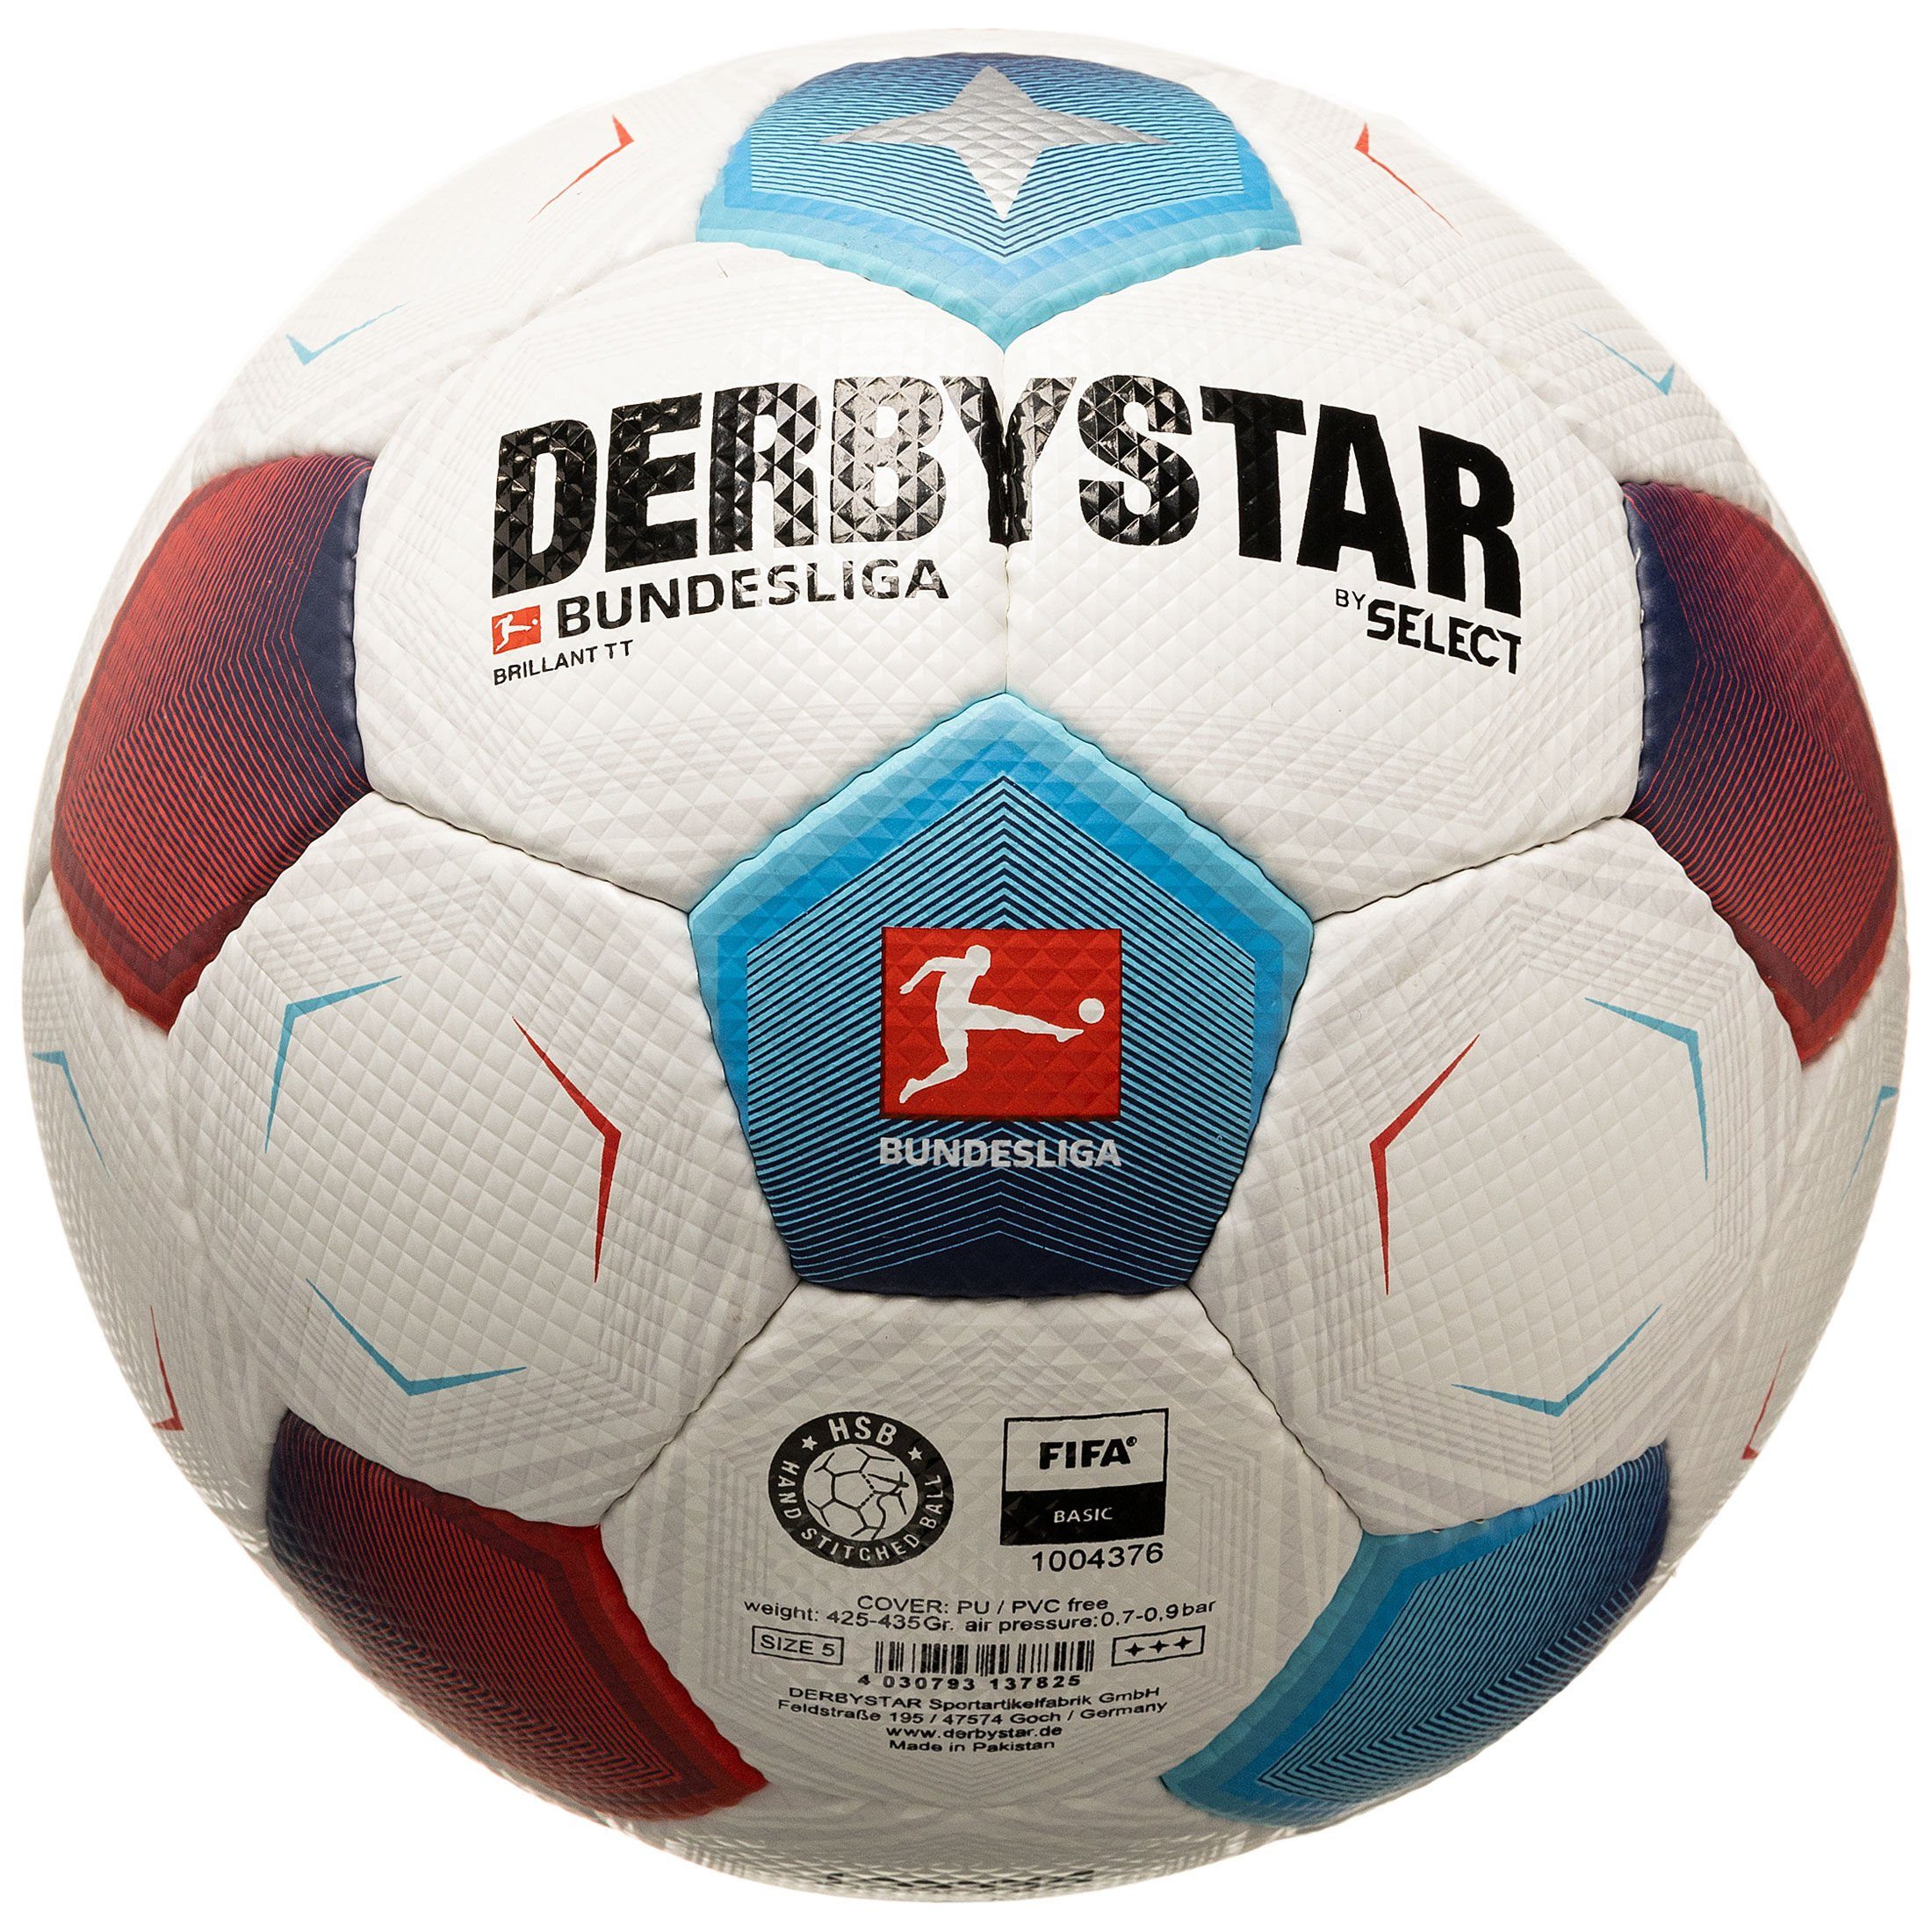 Derbystar Fußball Bundesliga Bundesliga Brillant TT v23 Fußball | Fußbälle